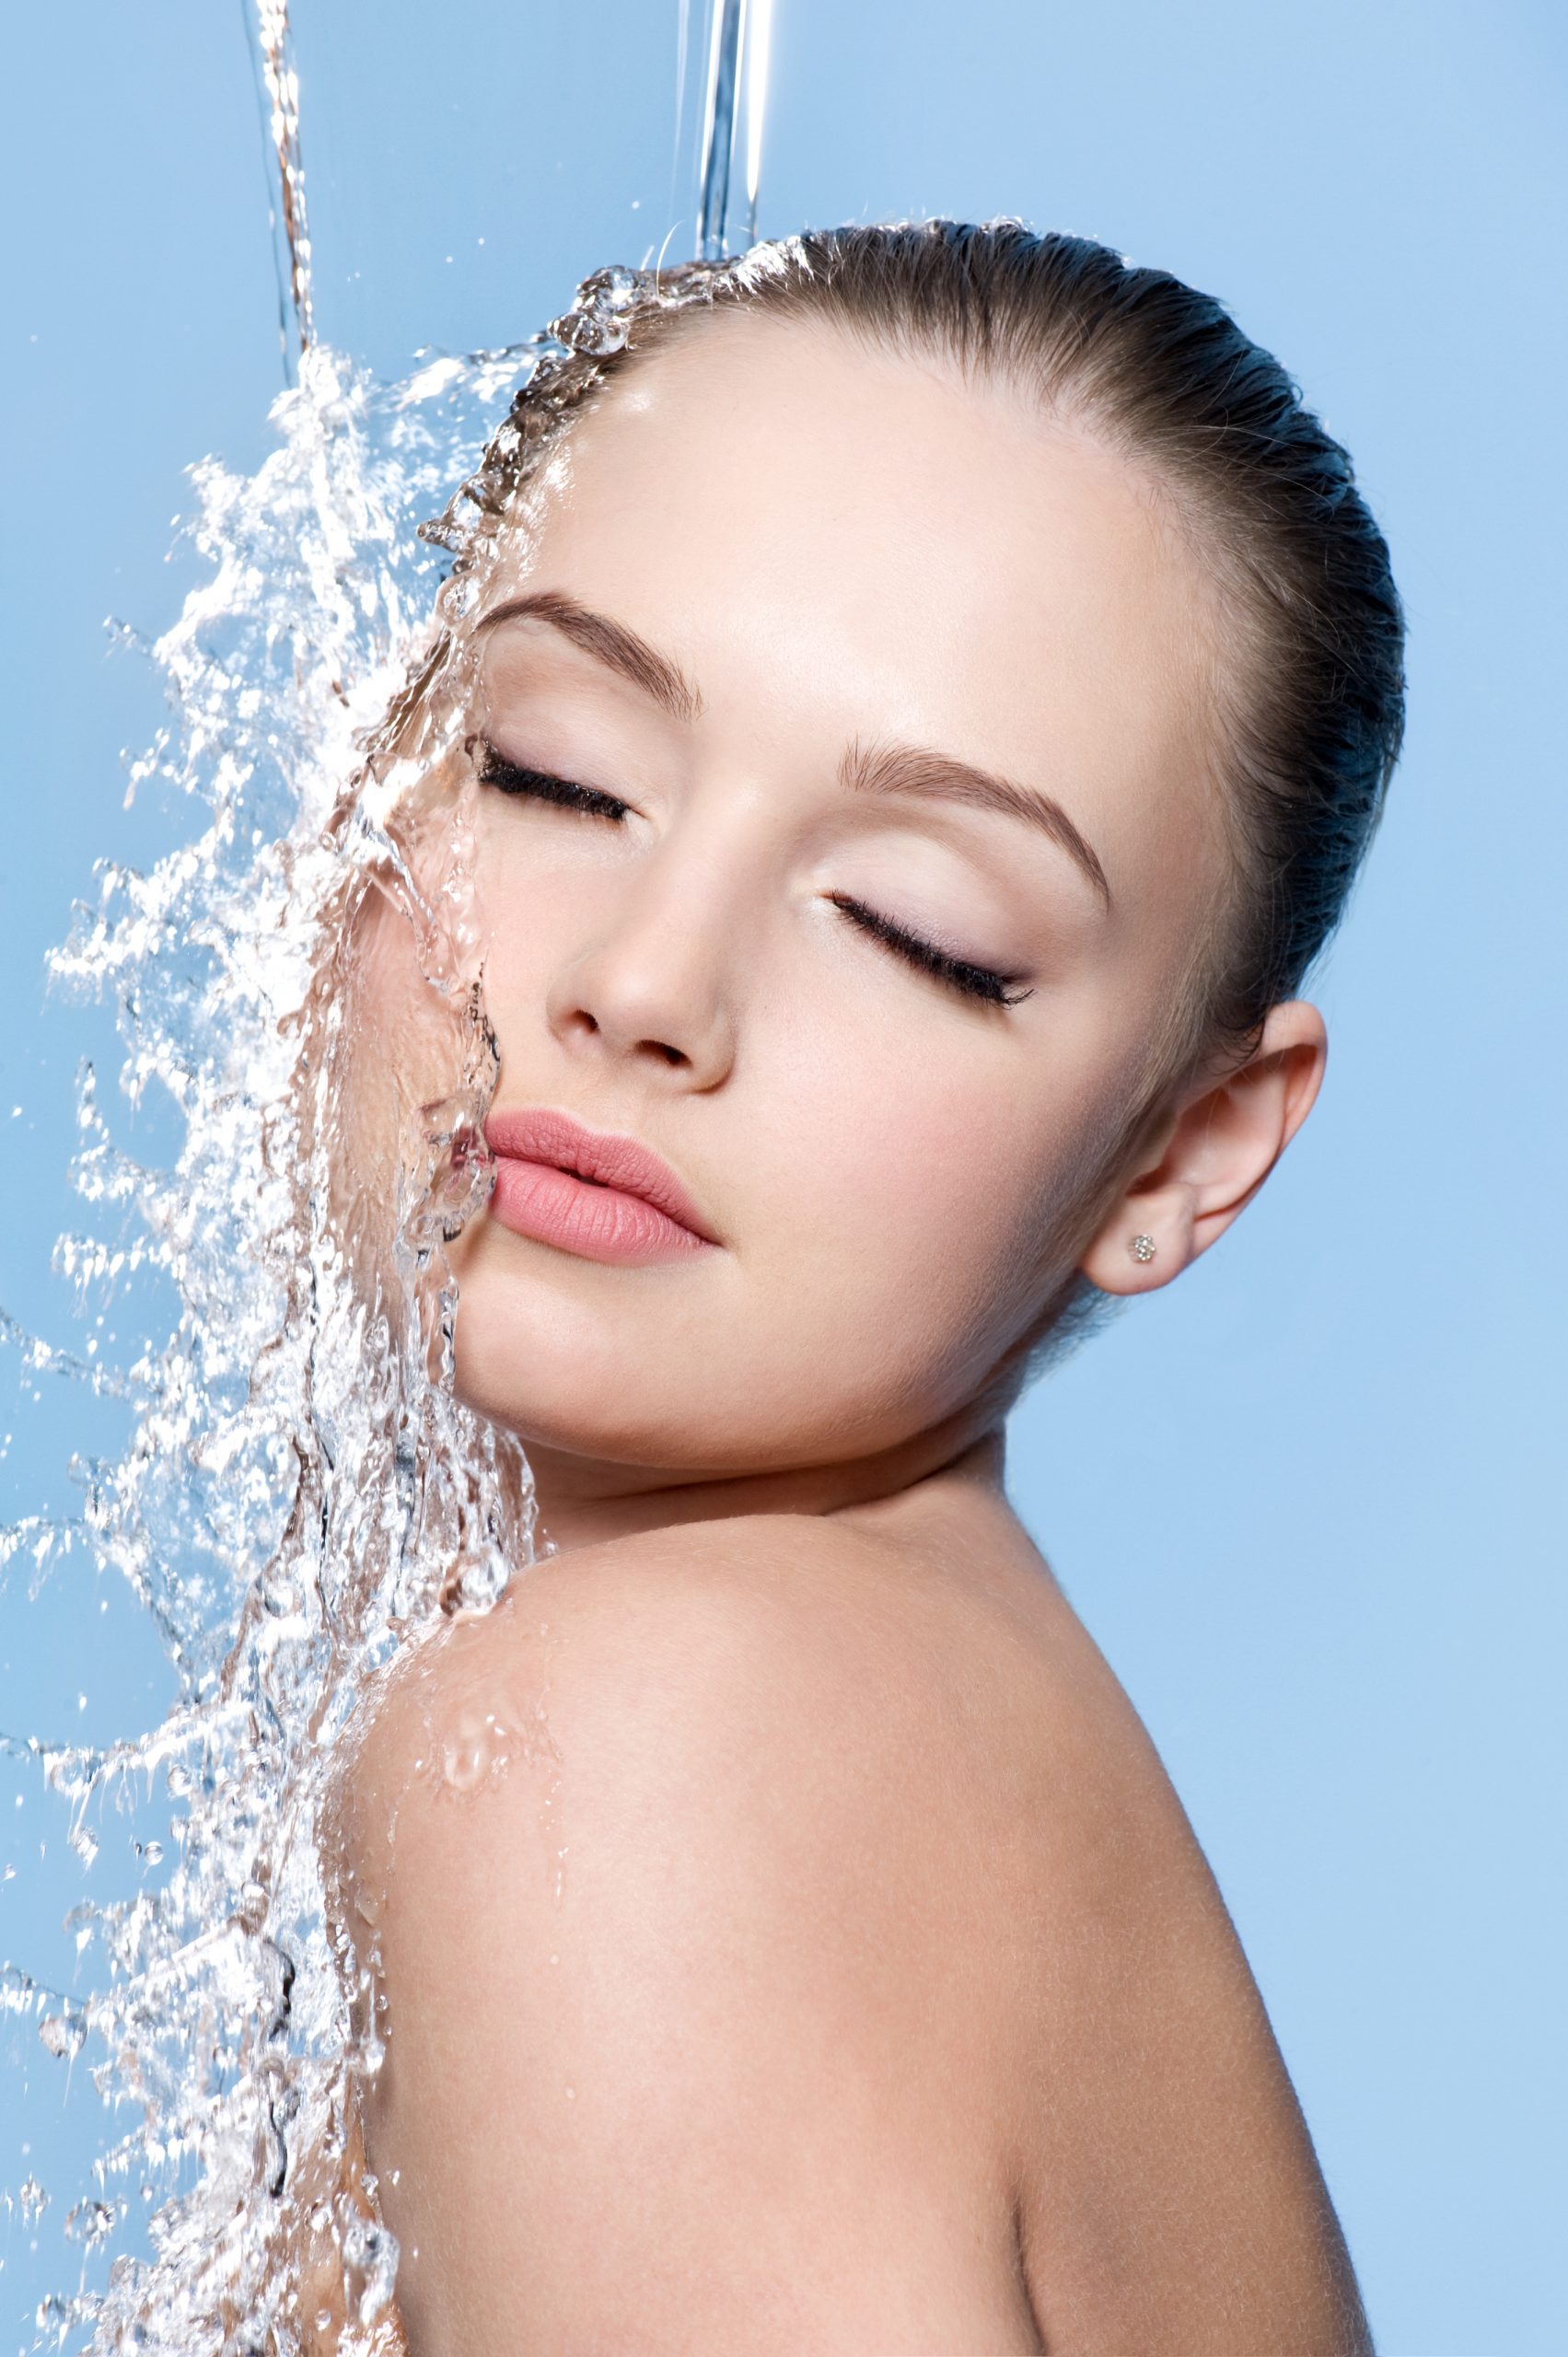 La doccia del mercoledì: non ti piace la sensazione della crema sulla pelle? Da oggi puoi idratarti già sotto la doccia